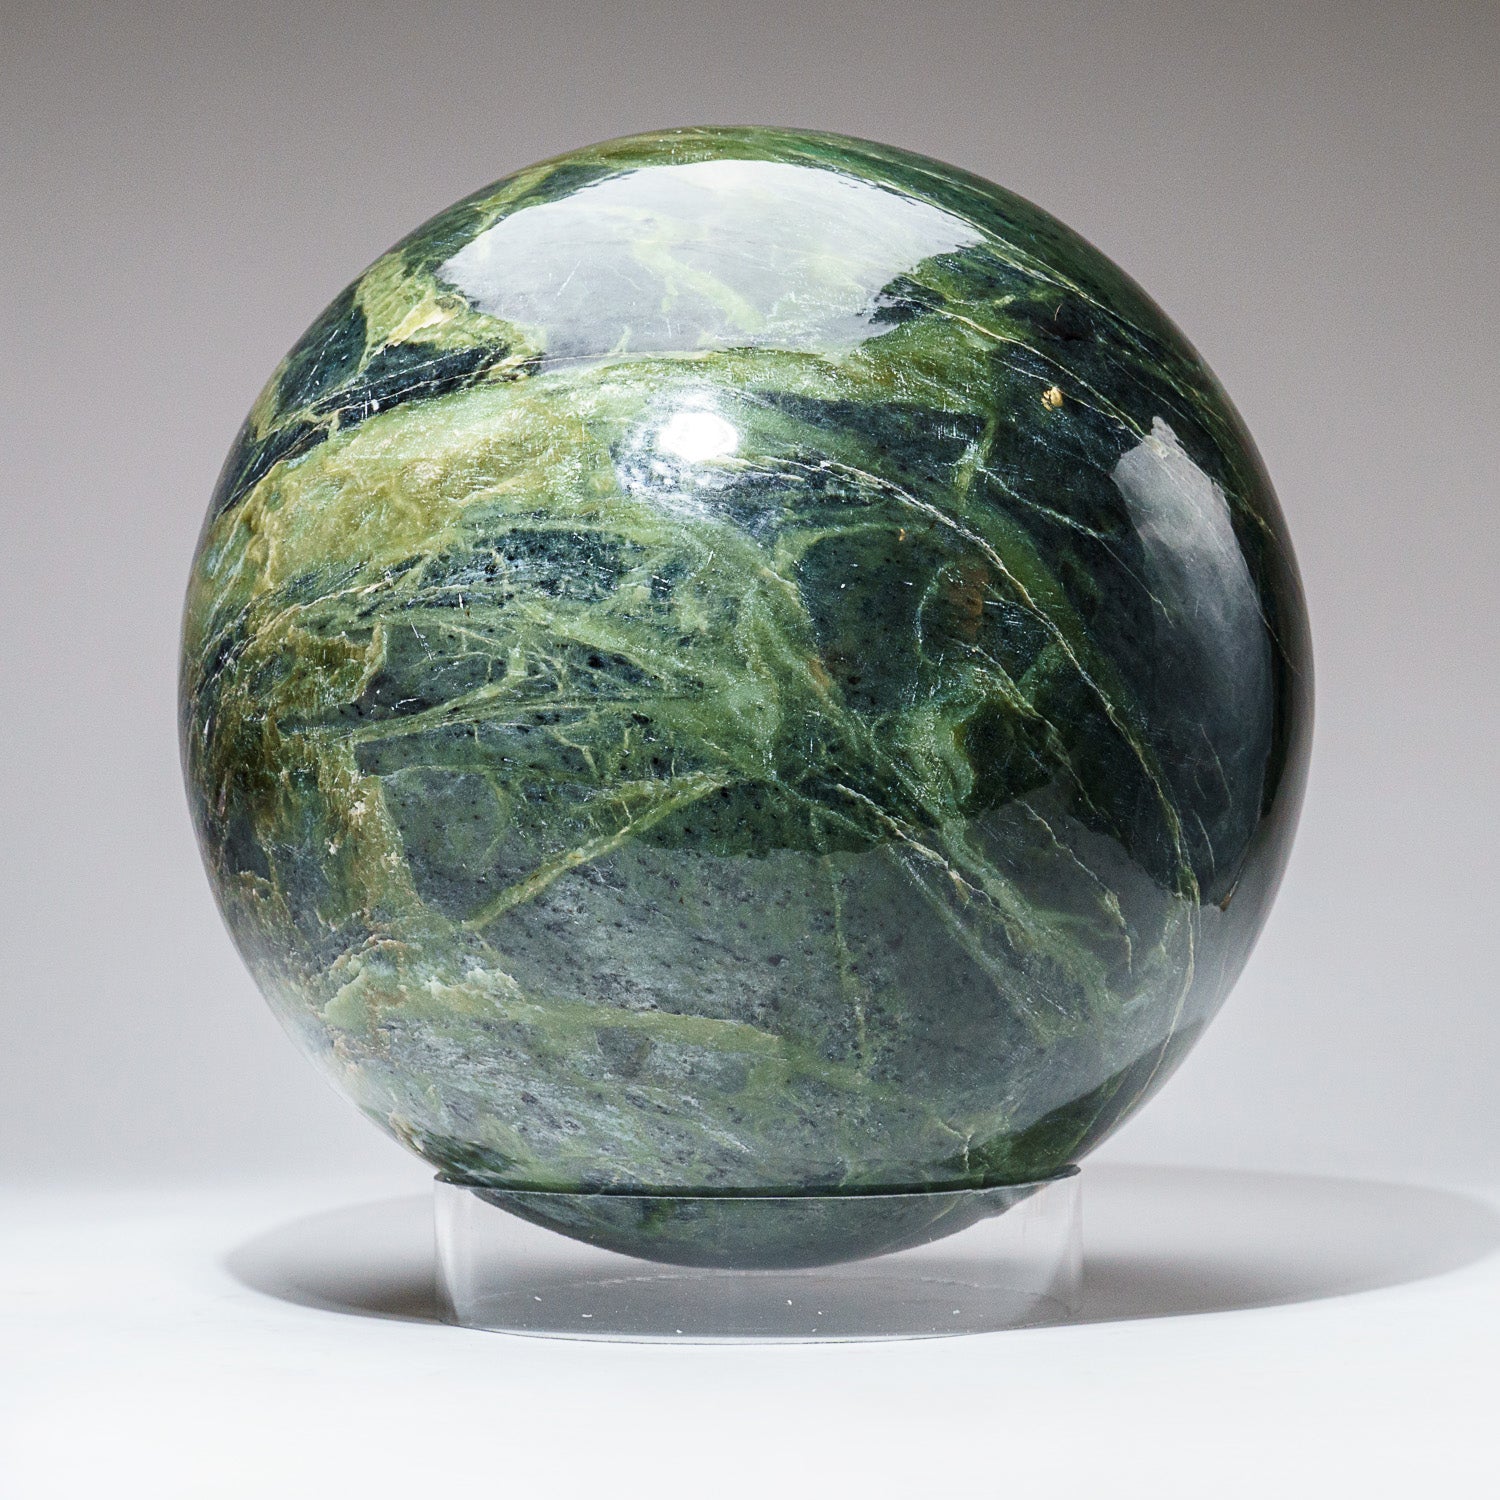 Huge Genuine Polished Nephrite Jade Sphere from Pakistan (65 lbs)